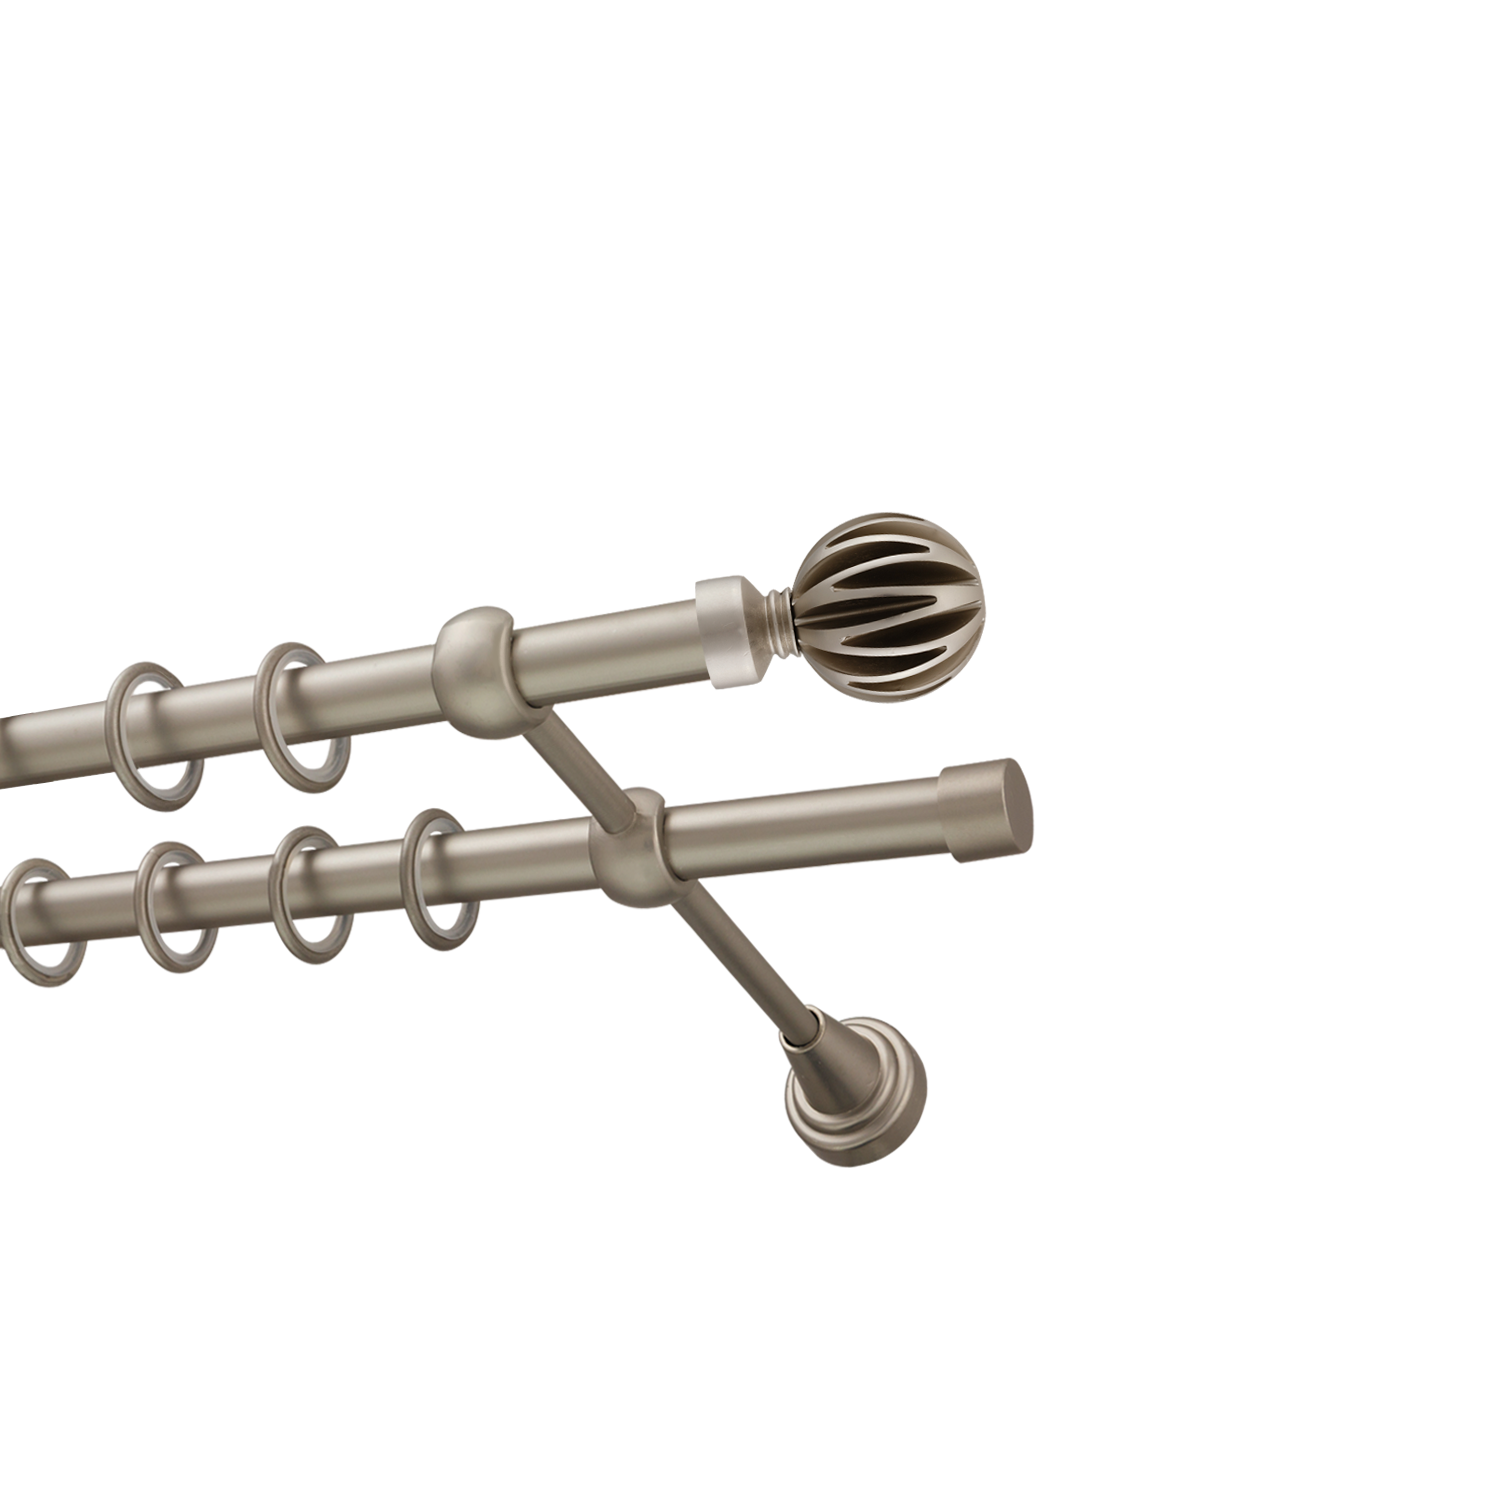 Металлический карниз для штор Шафран, двухрядный 16/16 мм, сталь, гладкая штанга, длина 160 см - фото Wikidecor.ru